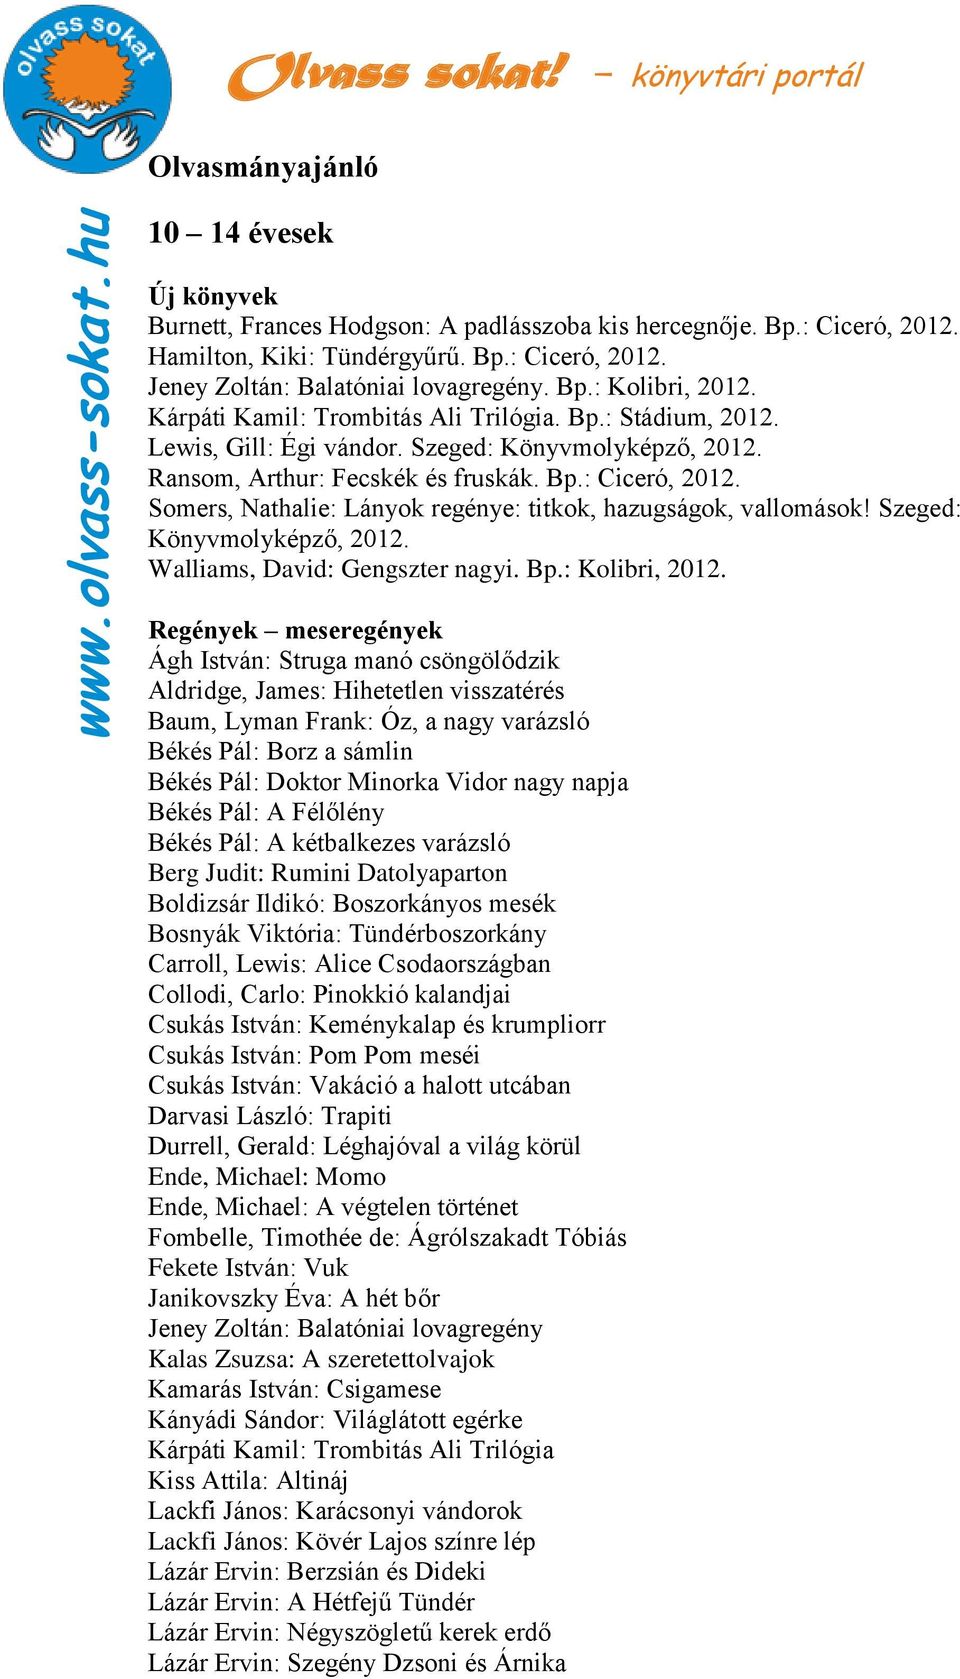 Somers, Nathalie: Lányok regénye: titkok, hazugságok, vallomások! Szeged: Könyvmolyképző, 2012. Walliams, David: Gengszter nagyi. Bp.: Kolibri, 2012.